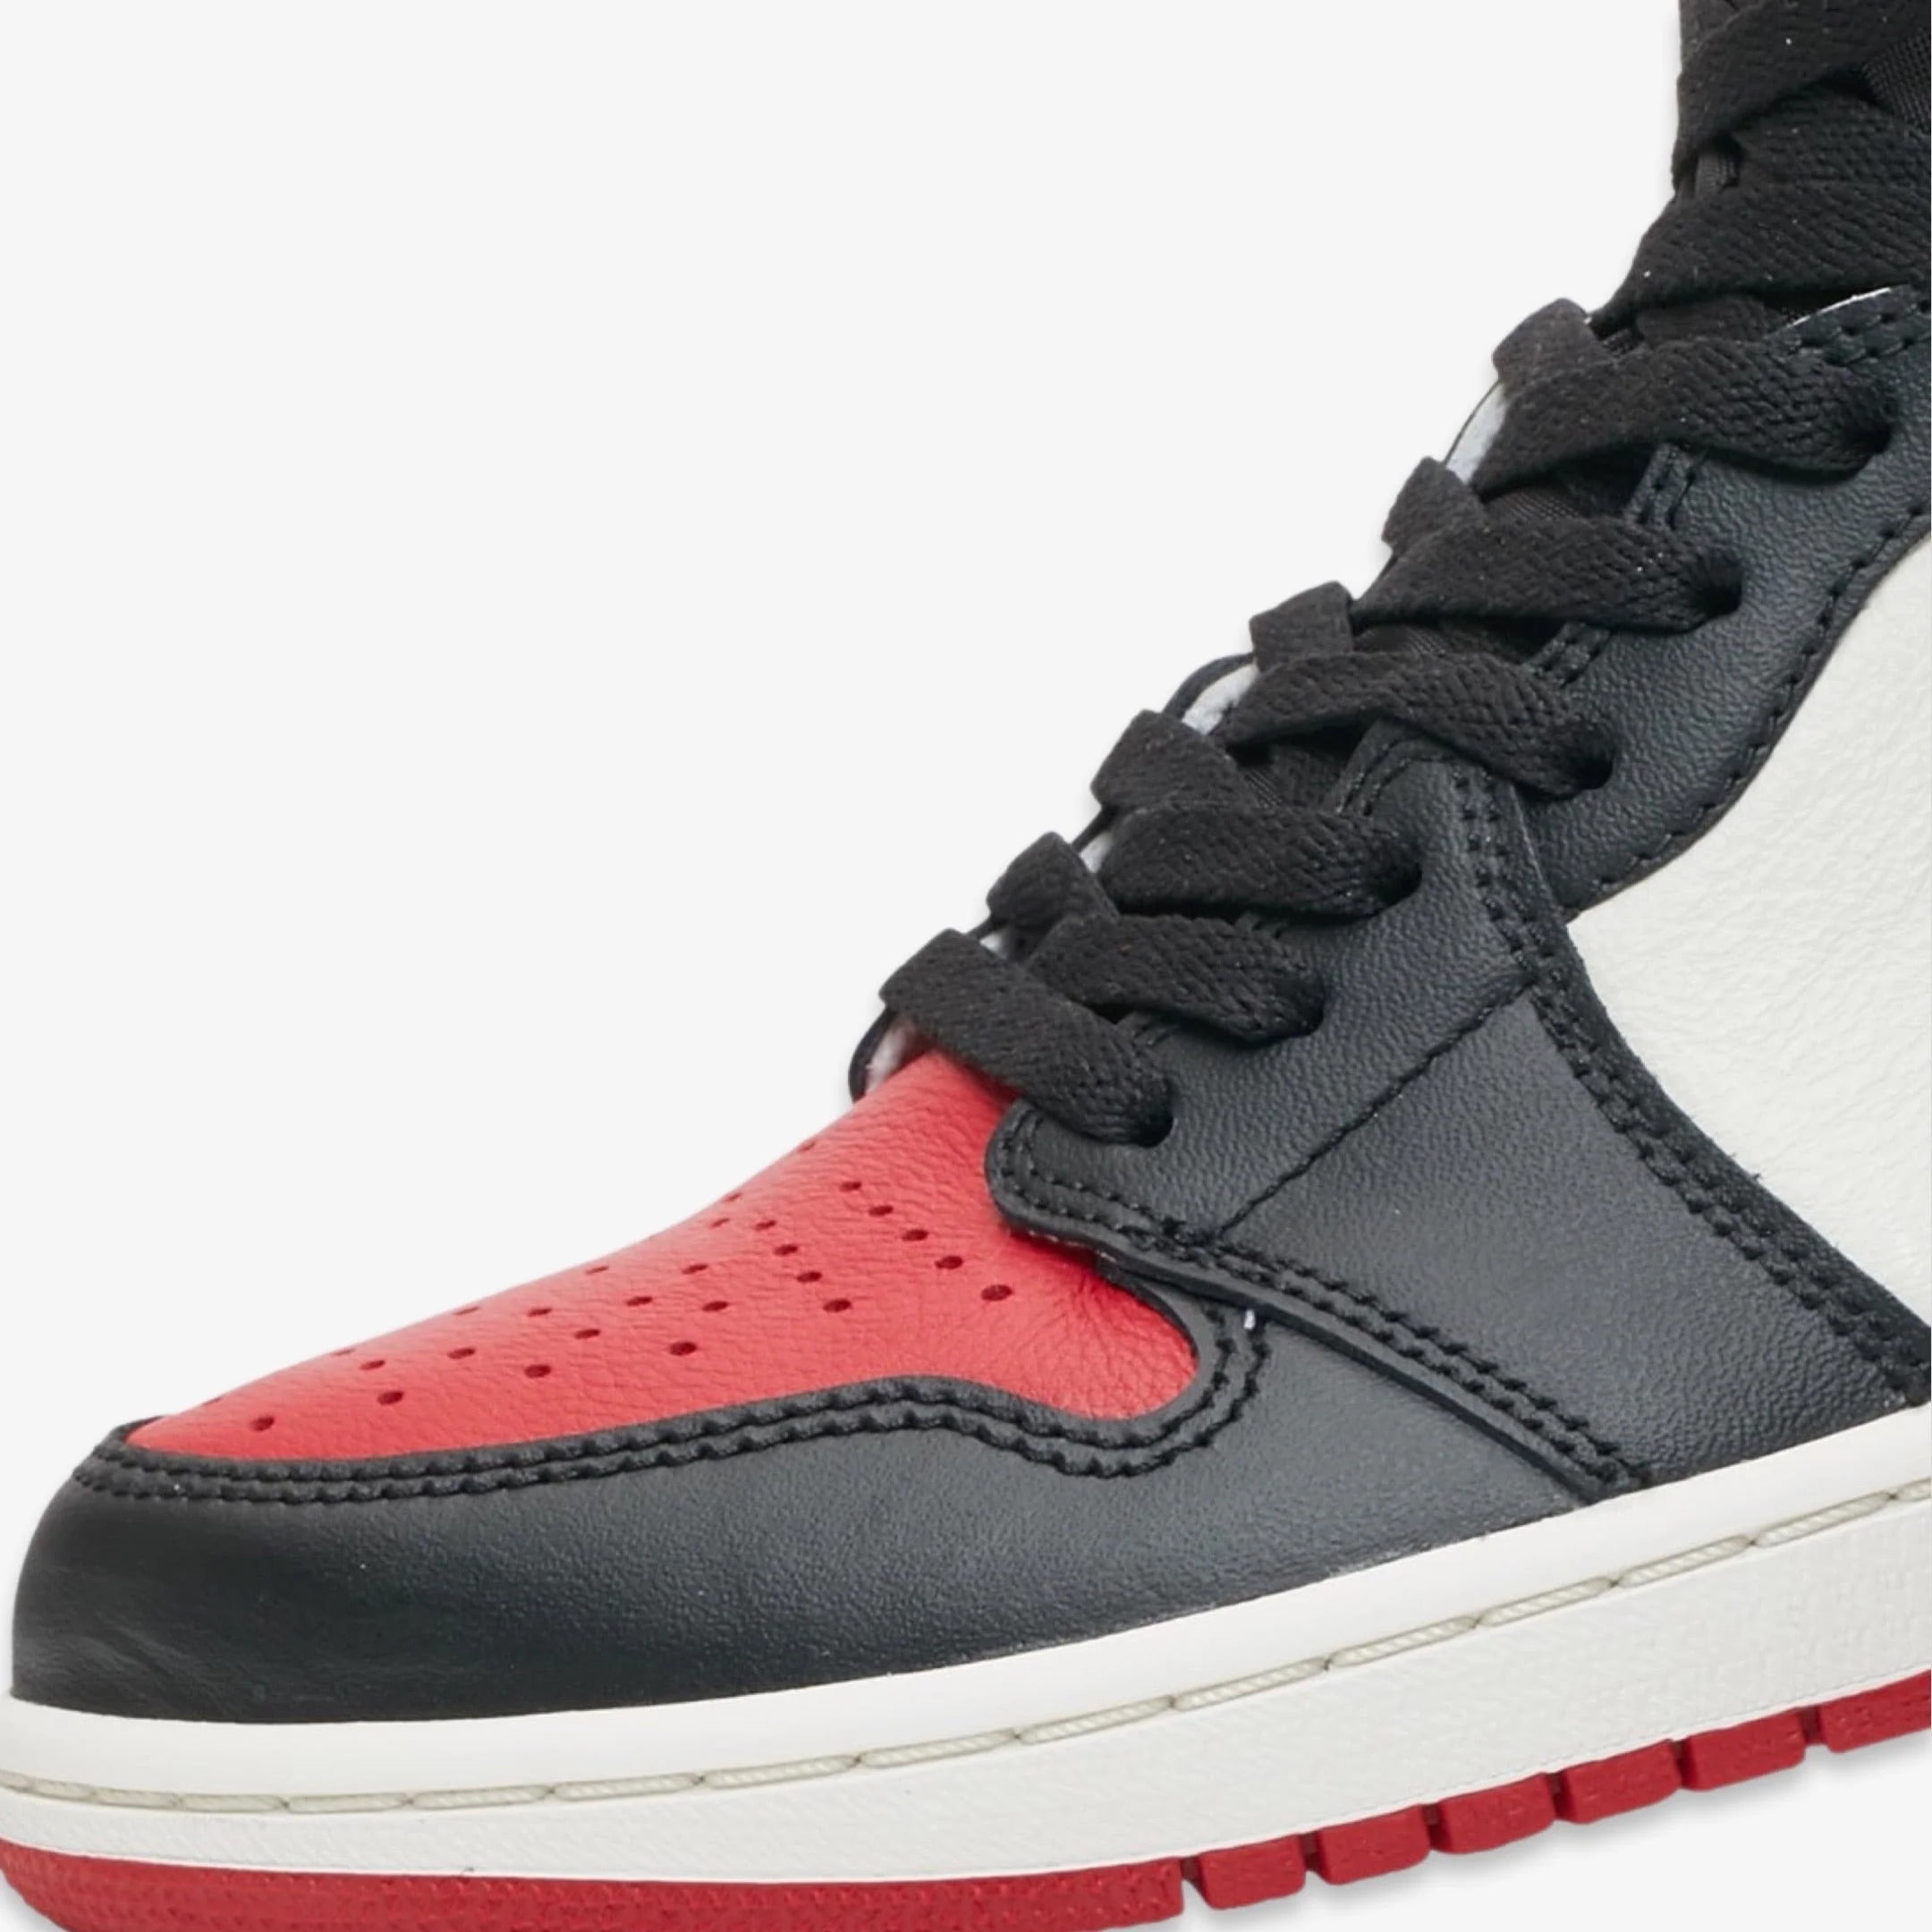 Buy Air Jordan 1 Retro High OG 'Bred Toe' - 555088 610